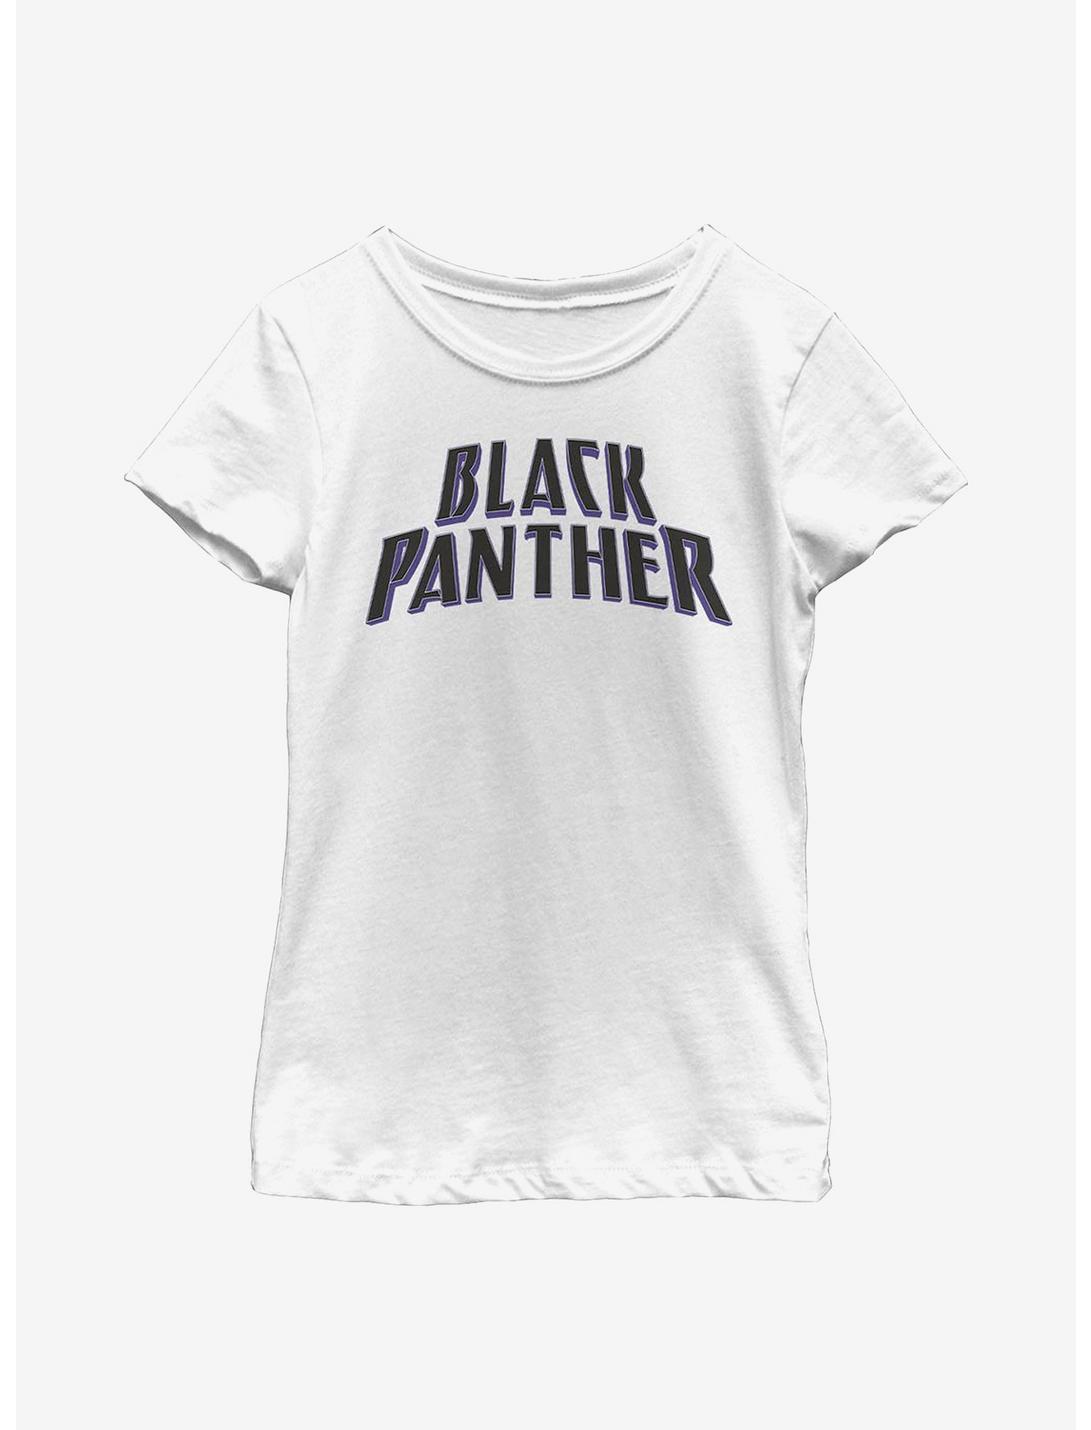 Marvel Black Panther English Youth Girls T-Shirt, WHITE, hi-res